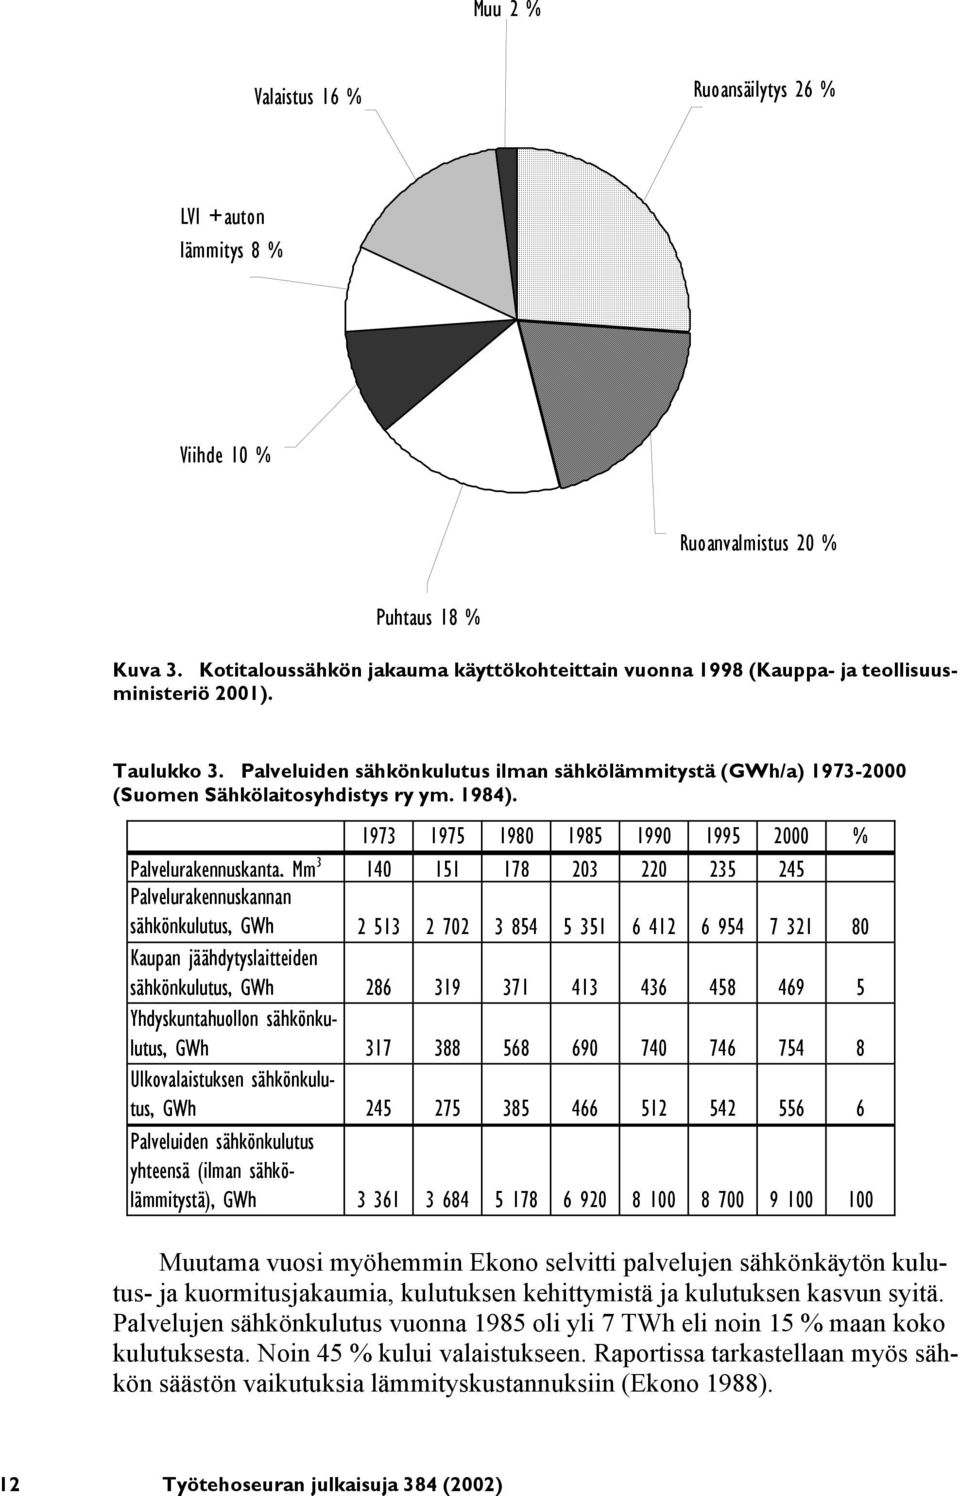 Palveluiden sähkönkulutus ilman sähkölämmitystä (GWh/a) 1973-2000 (Suomen Sähkölaitosyhdistys ry ym. 1984).